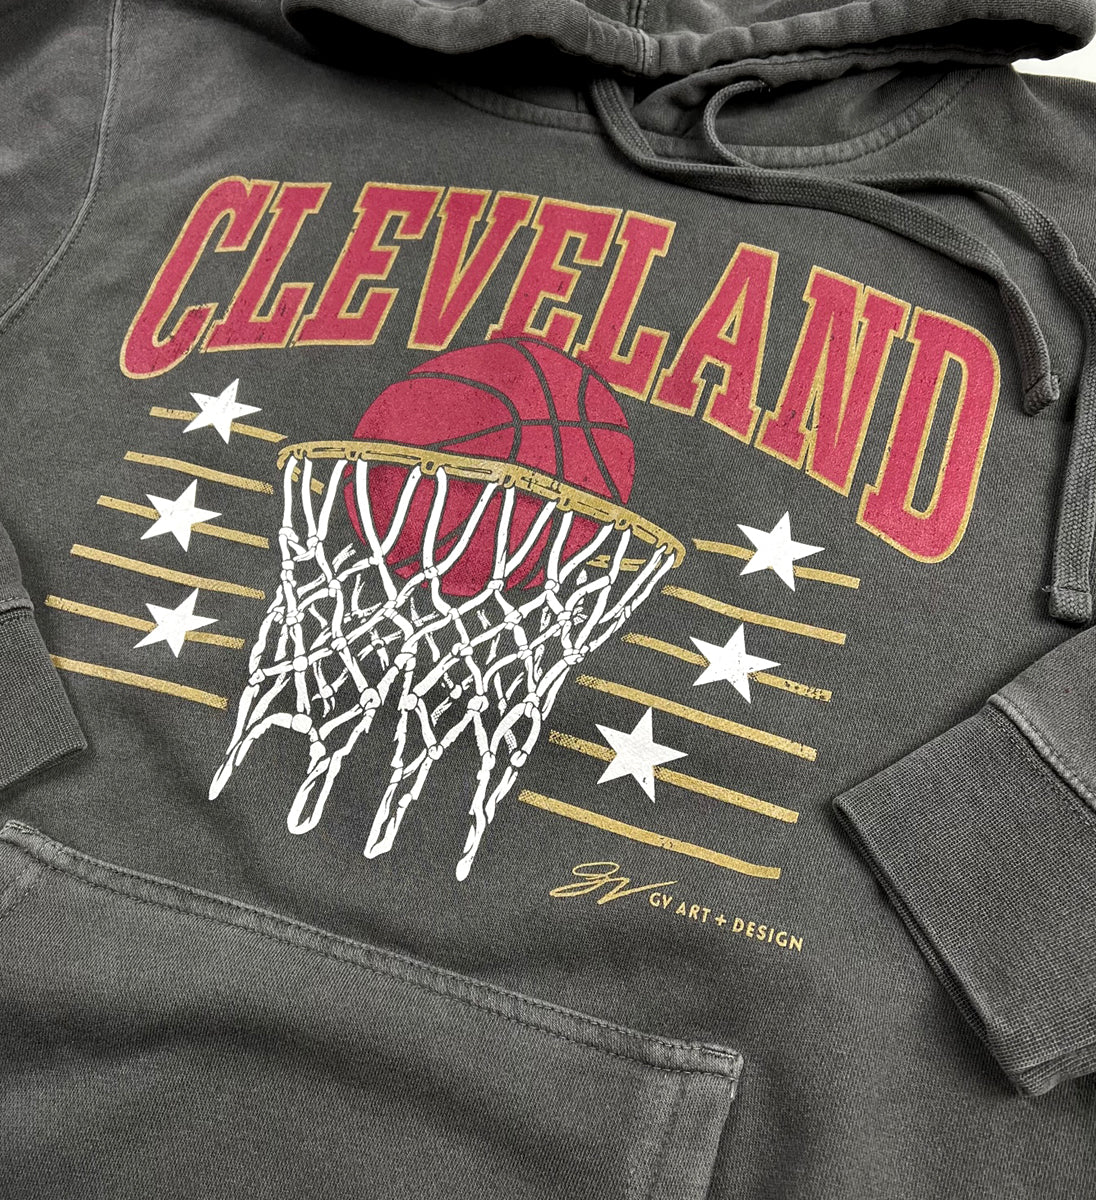 cavaliers basketball hoodie